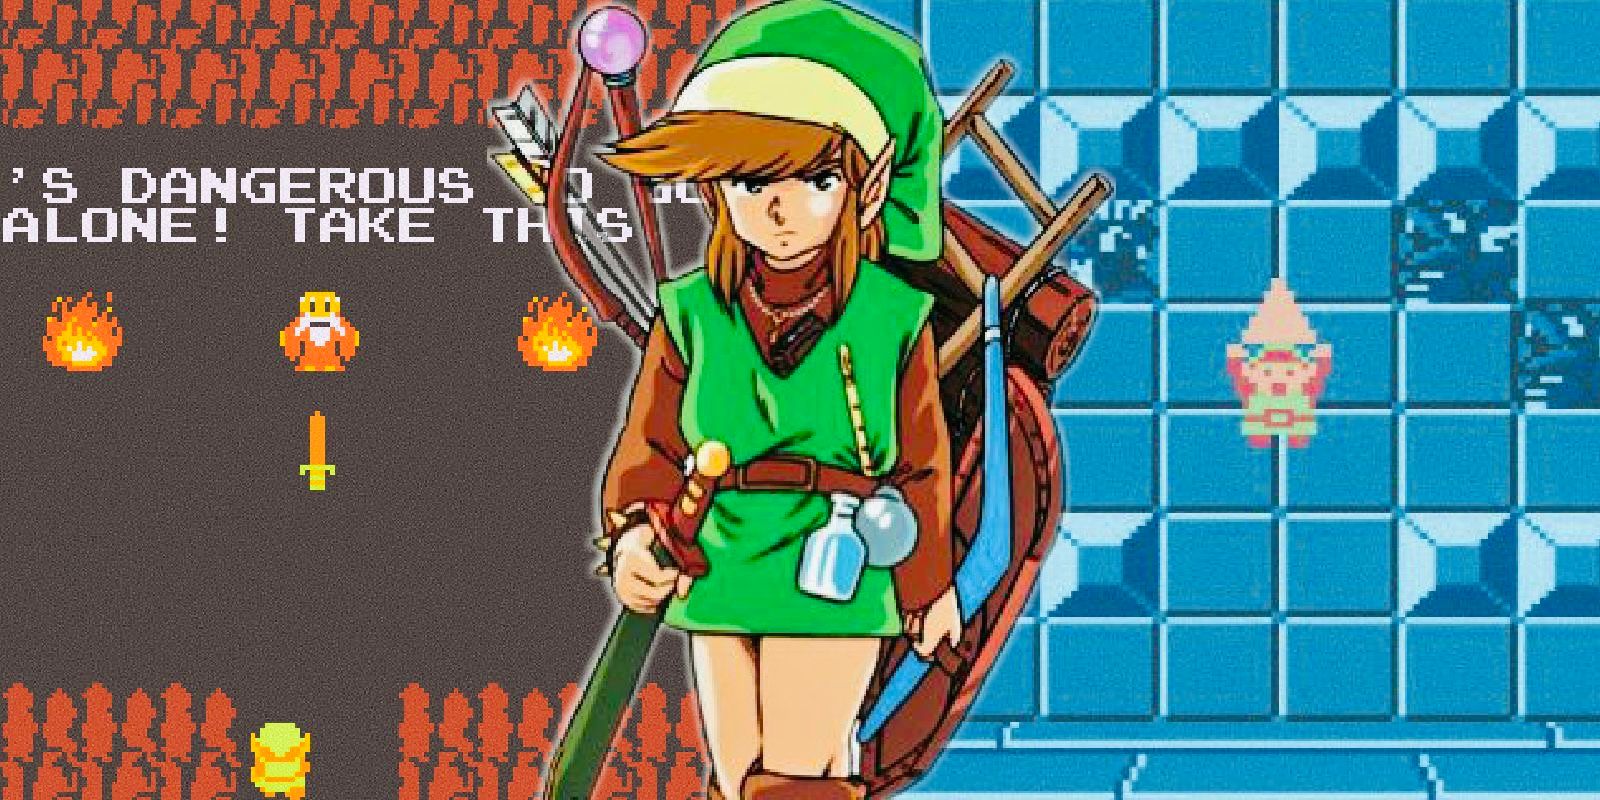 Legend of Zelda - Link Designs  Pixel art characters, Pixel art games,  Pixel characters